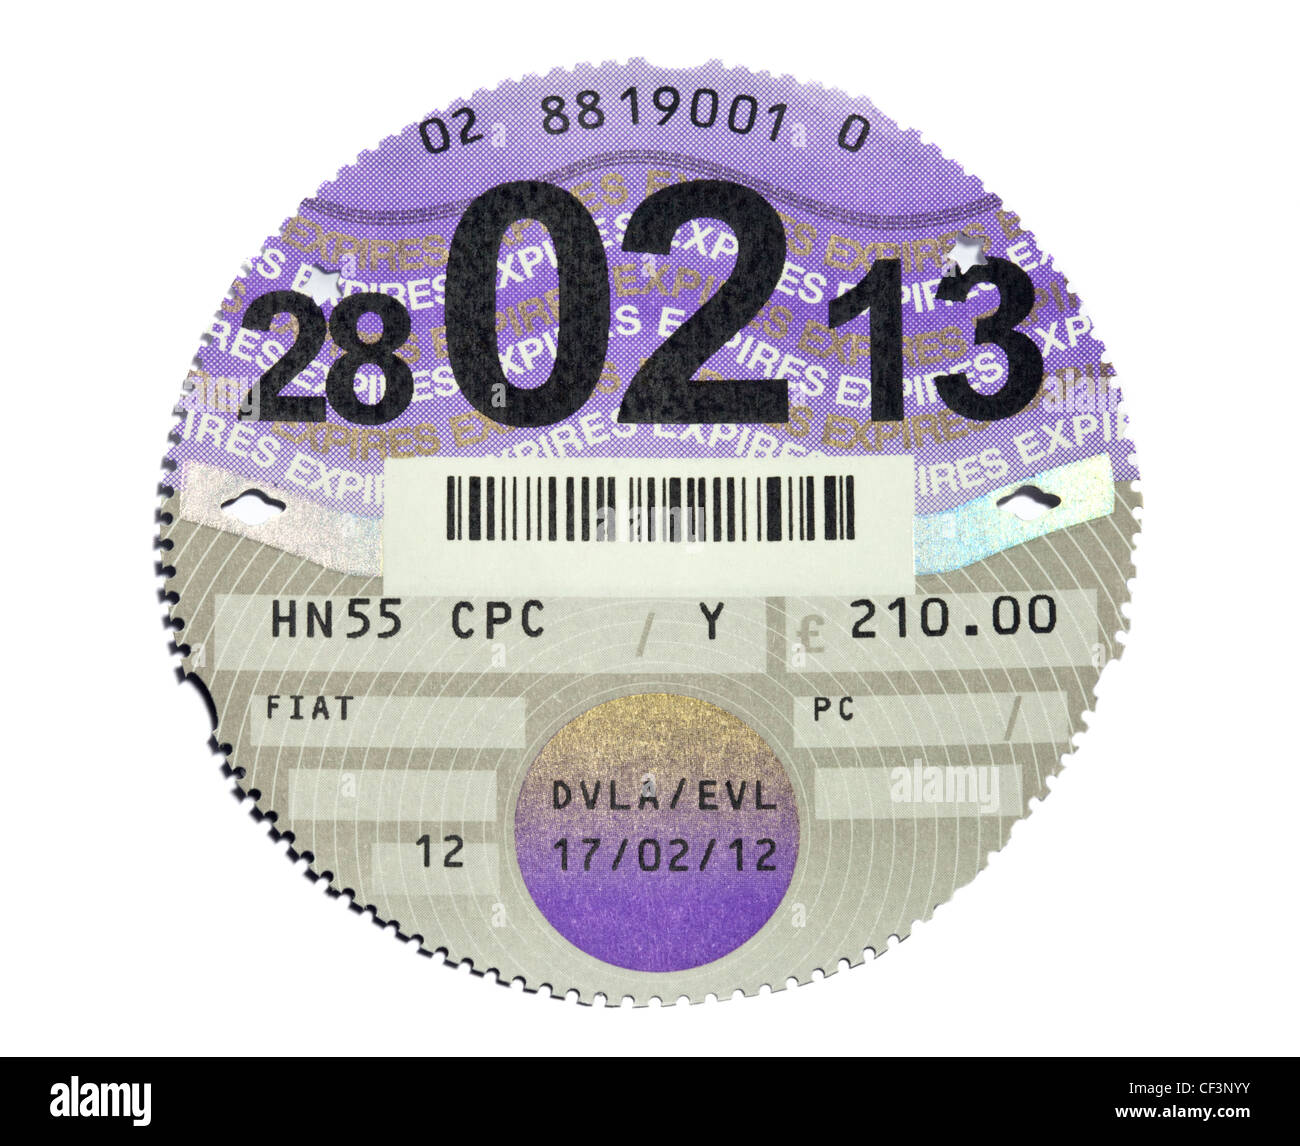 UK Car Tax Disc Stock Photo